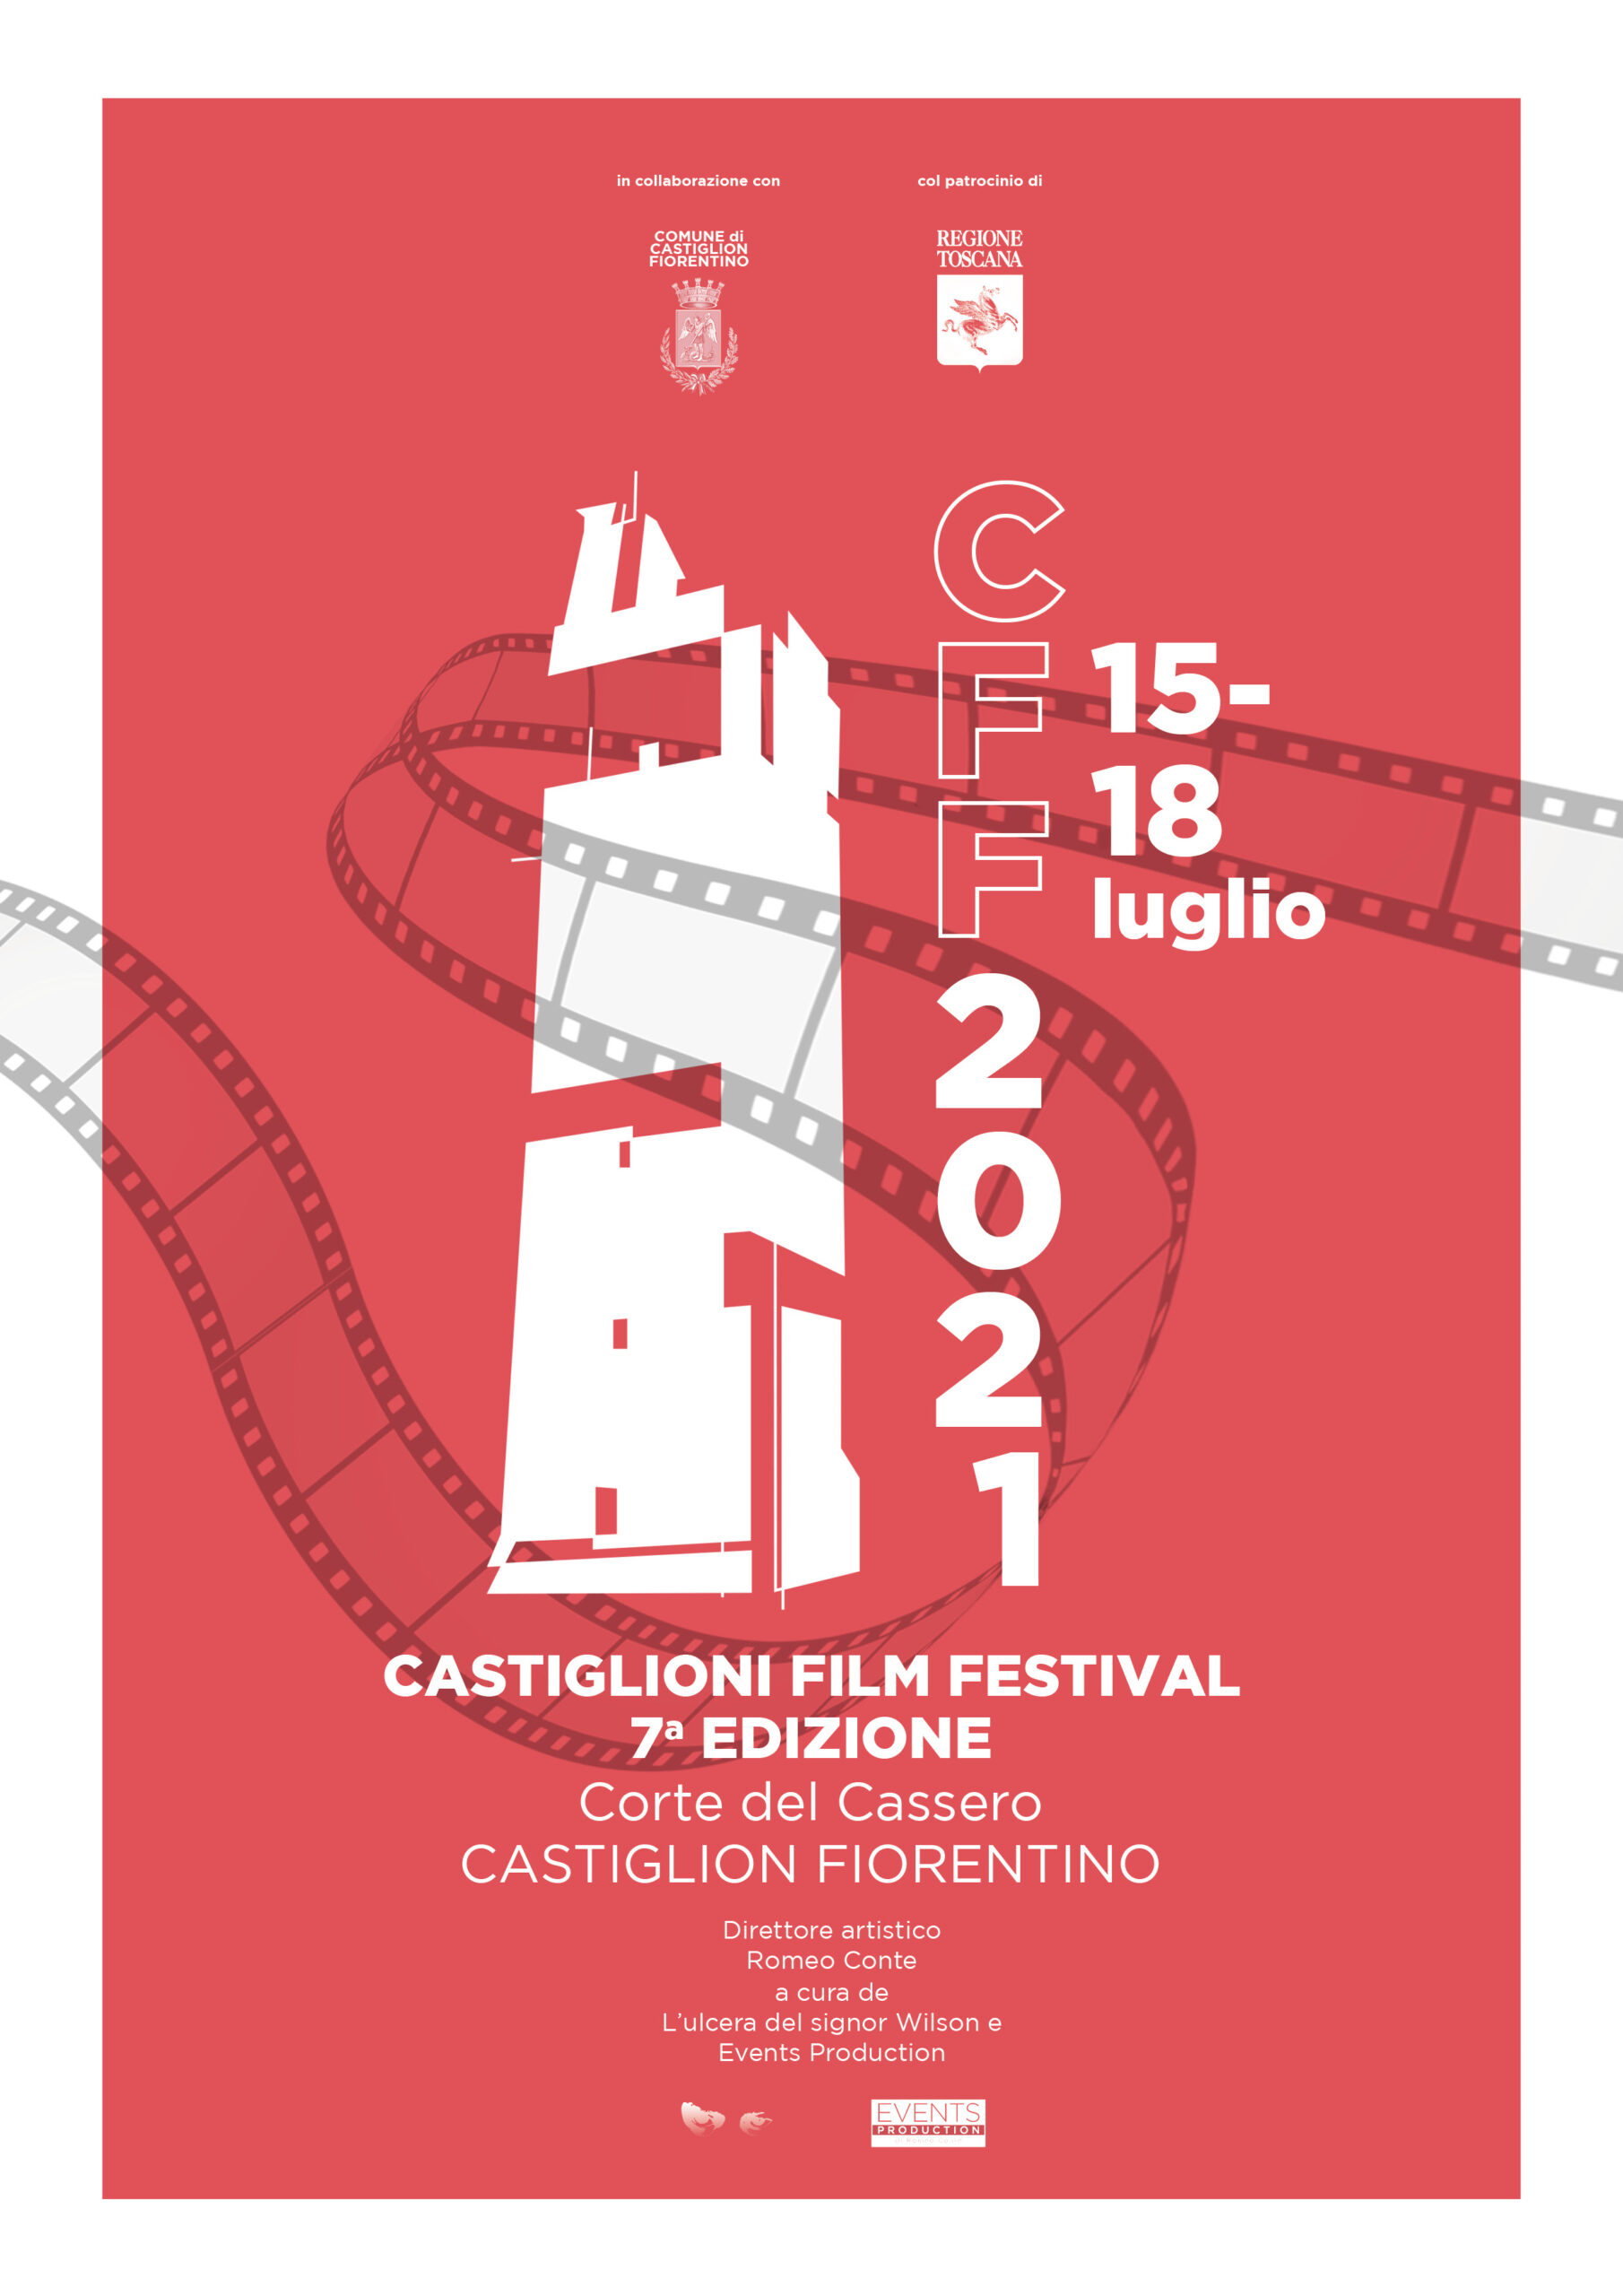 Castiglioni Film Festival: al via con una giornata dedicata alla commedia e un omaggio a Carlo Vanzina e Gigi Proietti